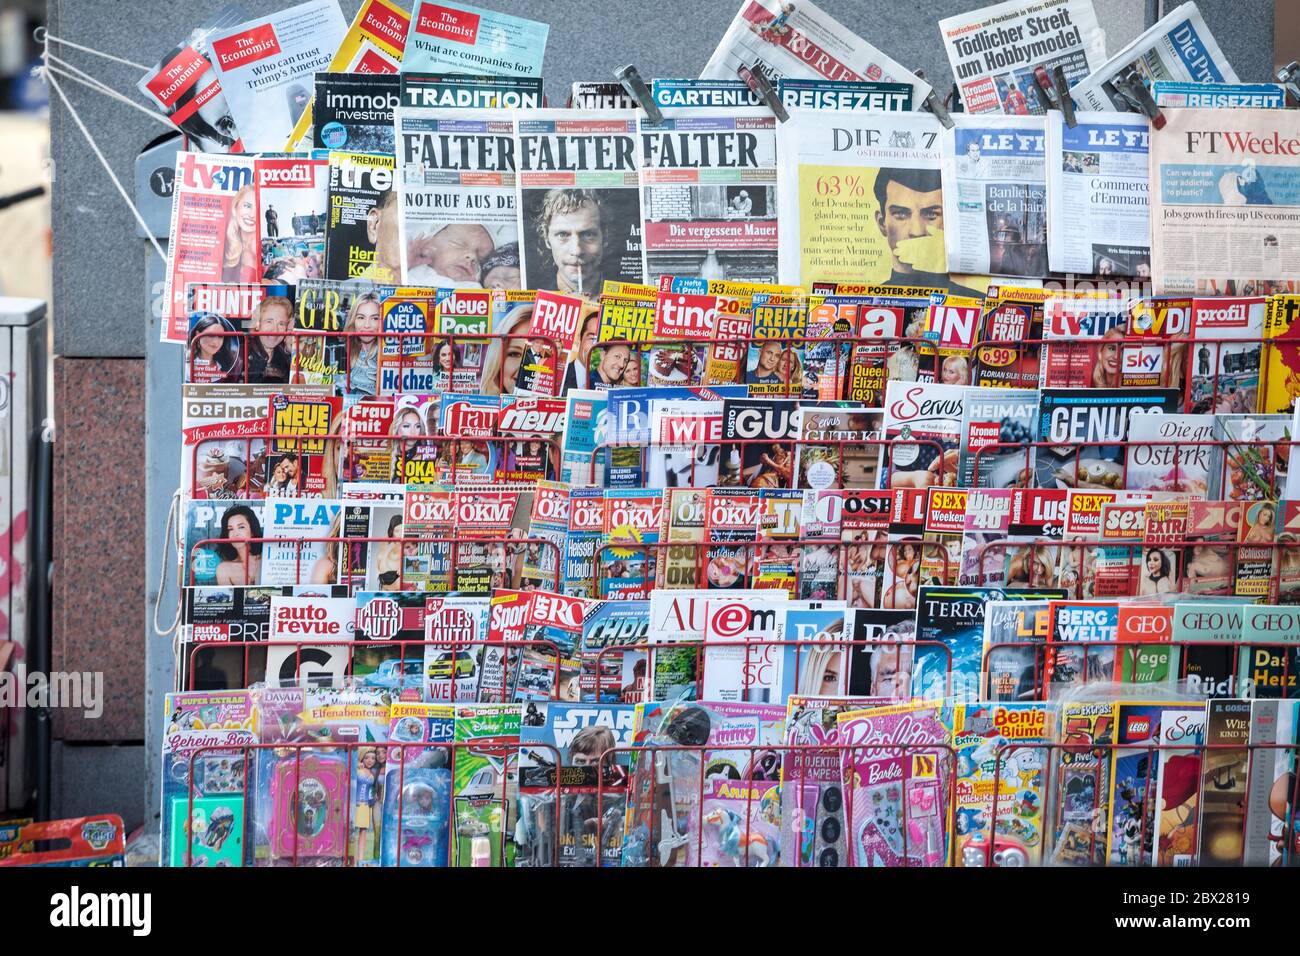 VIENNA, AUSTRIA - 6 NOVEMBRE 2019: Scaffali di riviste riempiti di giornali e giornali in tedesco, da un rivenditore di stampa austriaco nel centro di VI Foto Stock